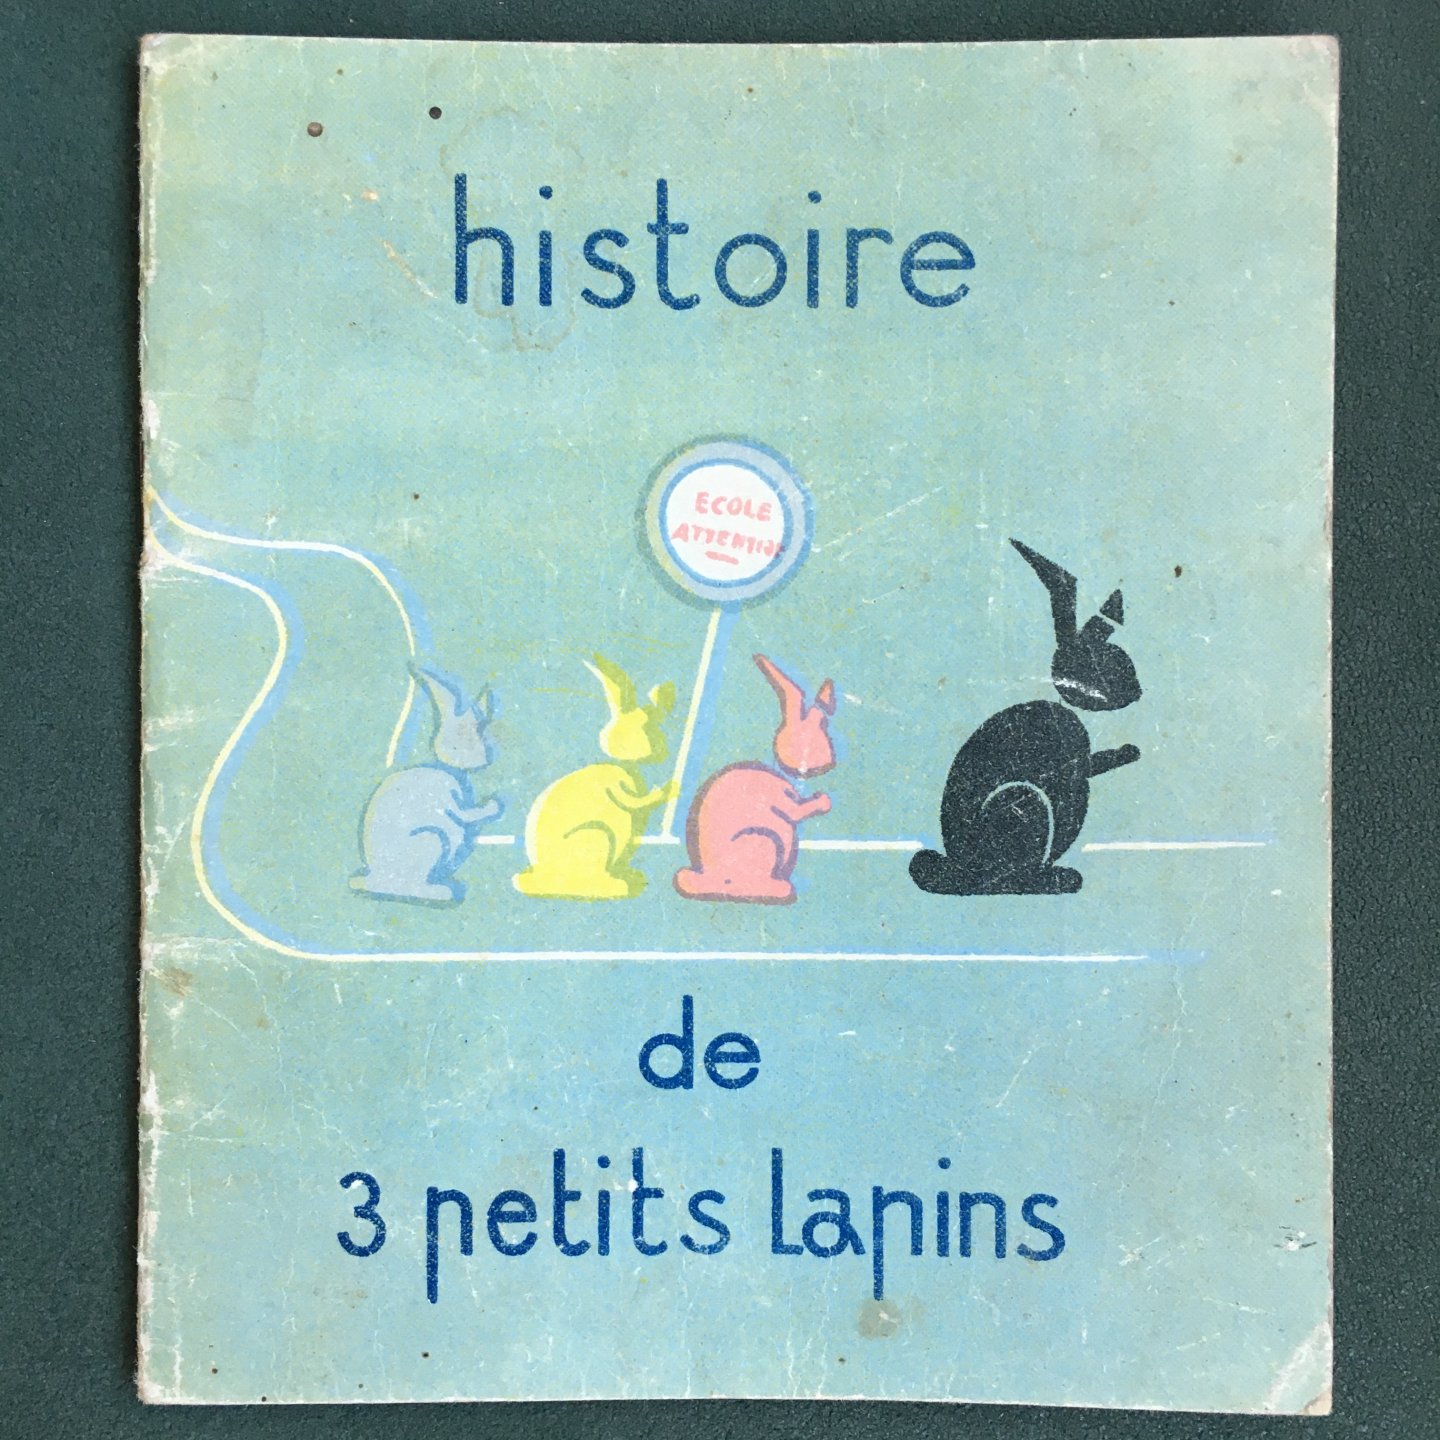 Romersma, Janine - Histoire de 3 petits lapins